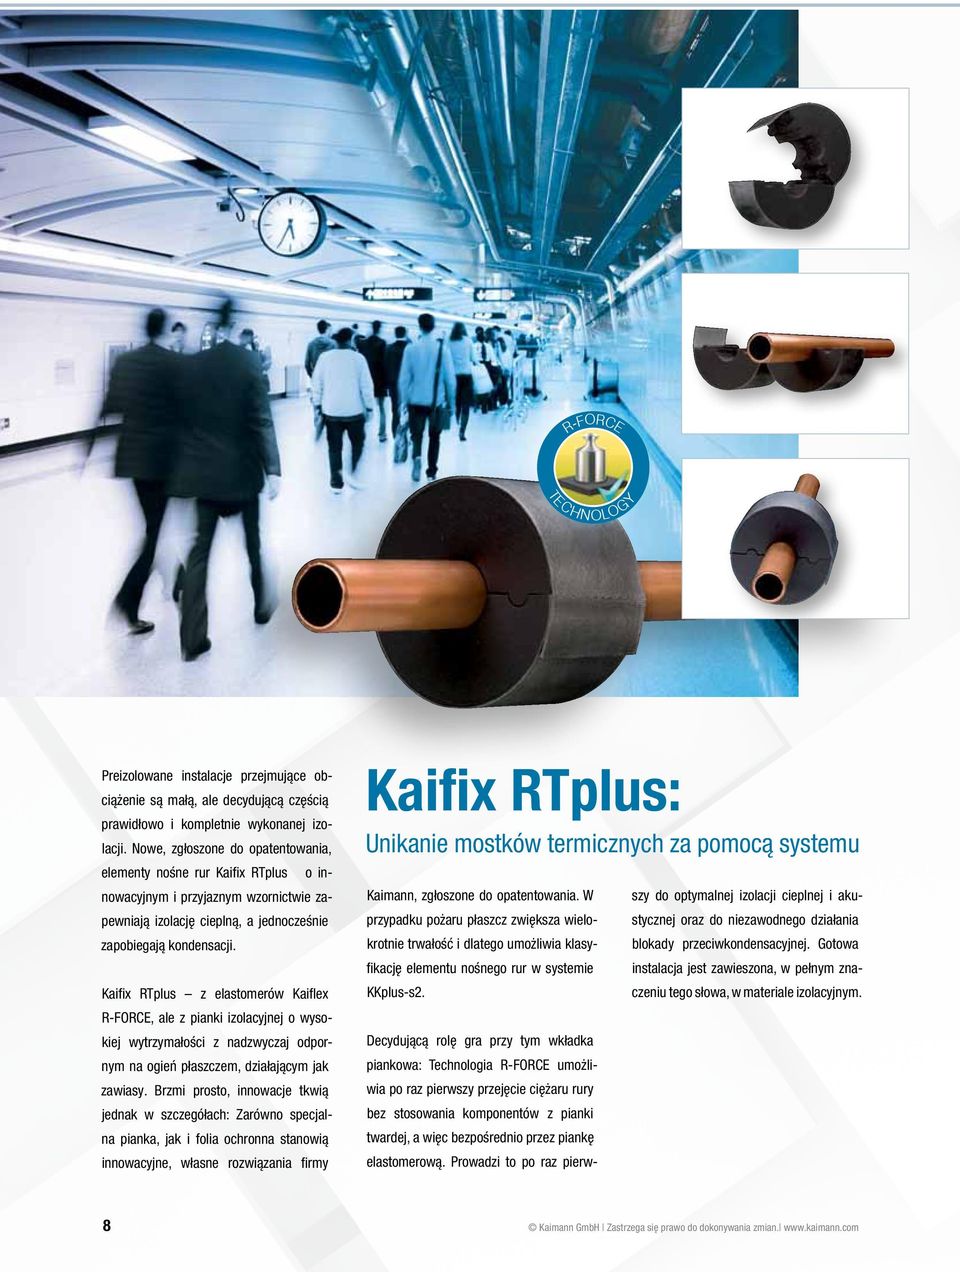 Kaifix RTplus z elastomerów Kaiflex R-FORCE, ale z pianki izolacyjnej o wysokiej wytrzymałości z nadzwyczaj odpornym na ogień płaszczem, działającym jak zawiasy.